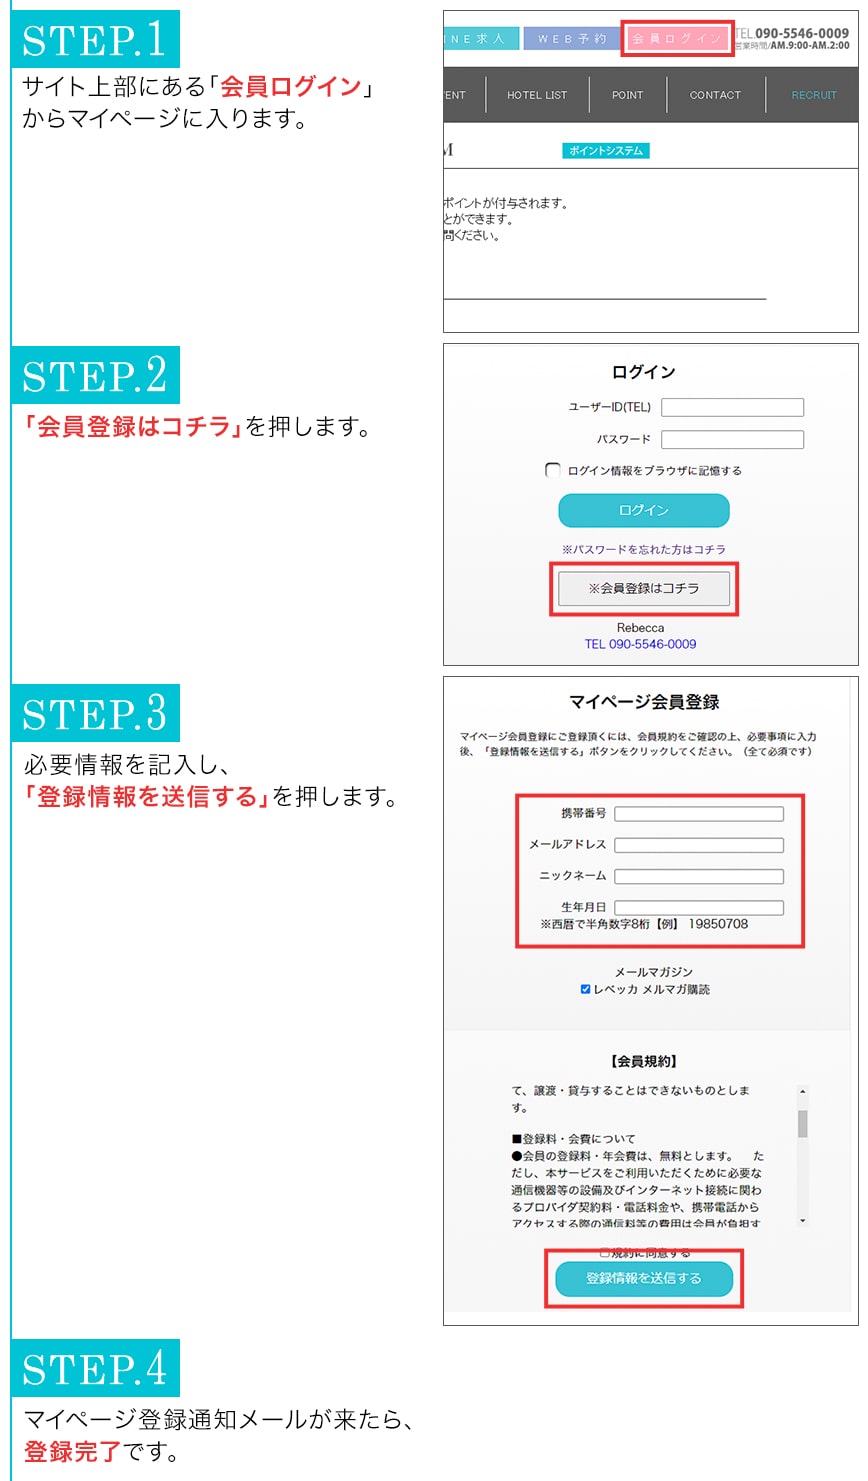 ステップ1。マイページログインを押す。ステップ2。会員登録はコチラを押す。ステップ３。必要情報を記入し、情報登録を送信するボタンを押す。登録通知メールが届いたら完了です。